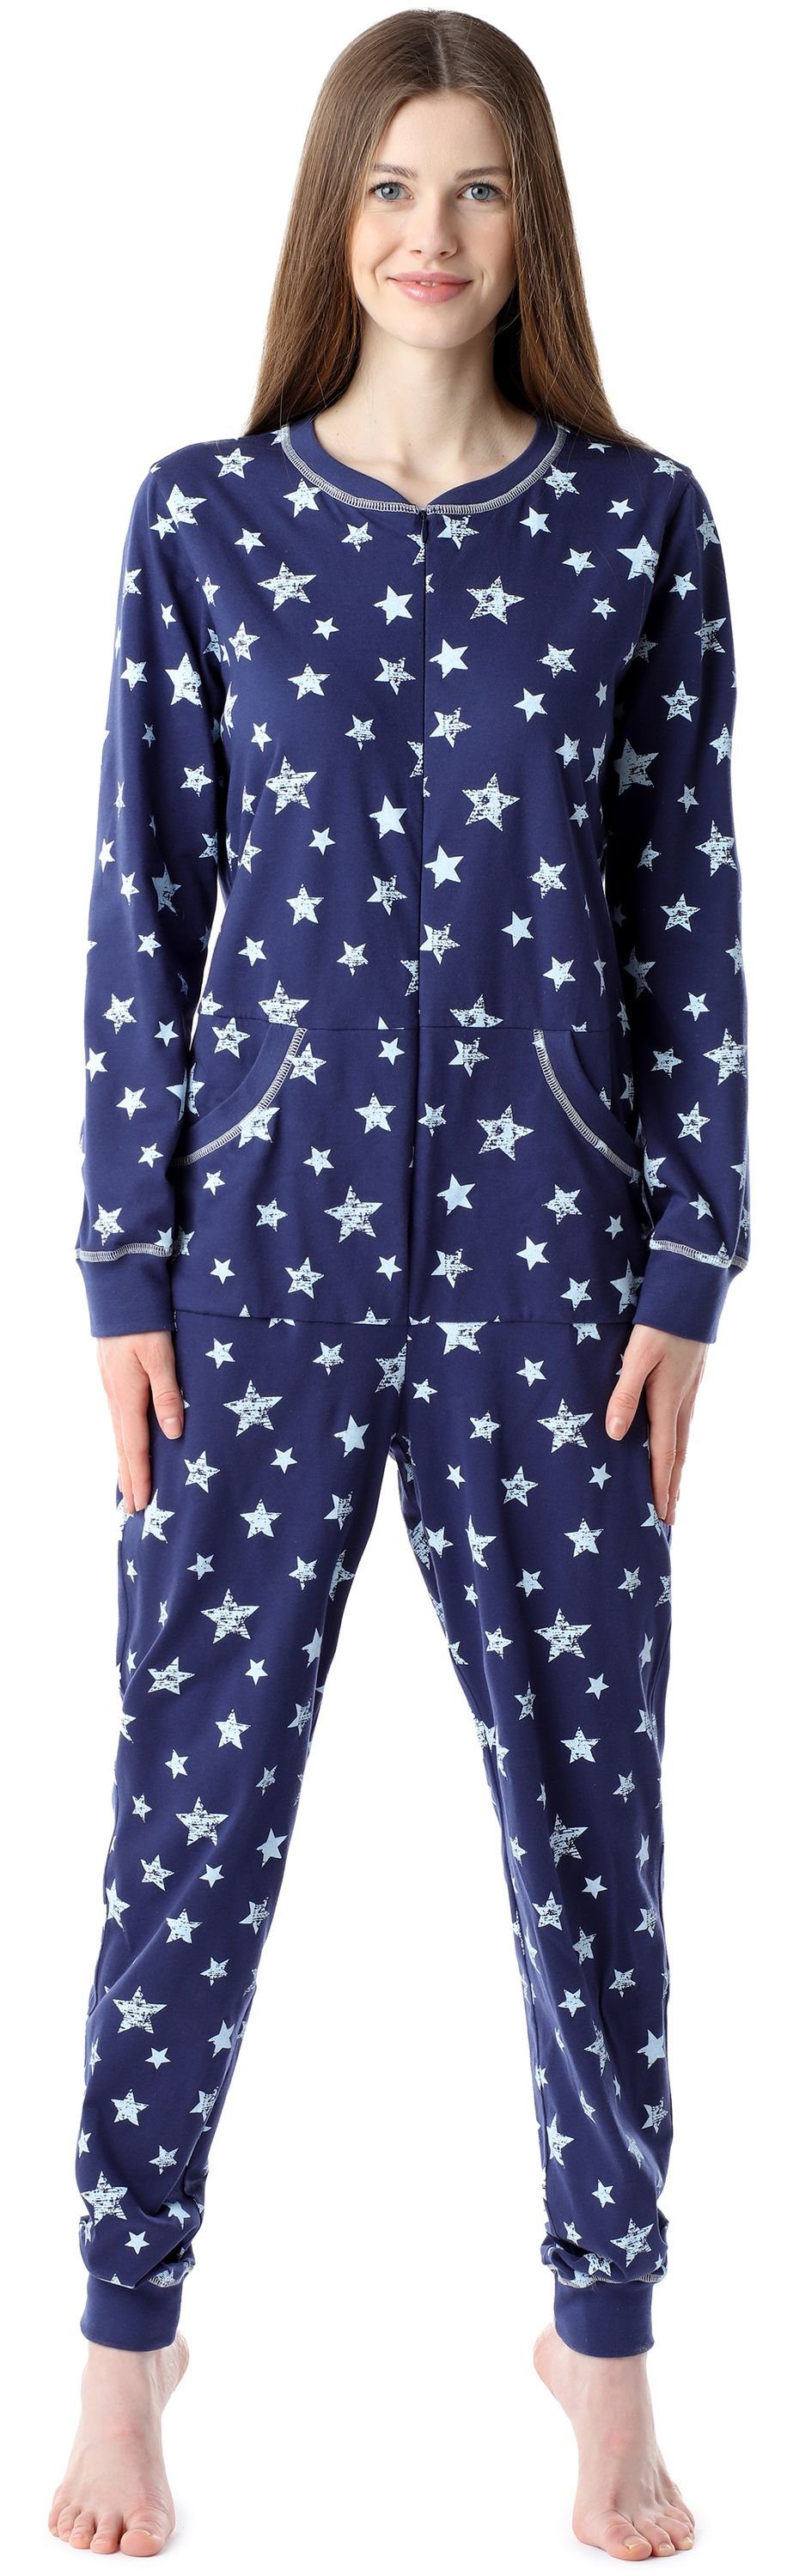 Bellivalini Pyjama Damen Schlafanzug Schlafoverall BLV50-206 Marineblau/Blaue Sterne